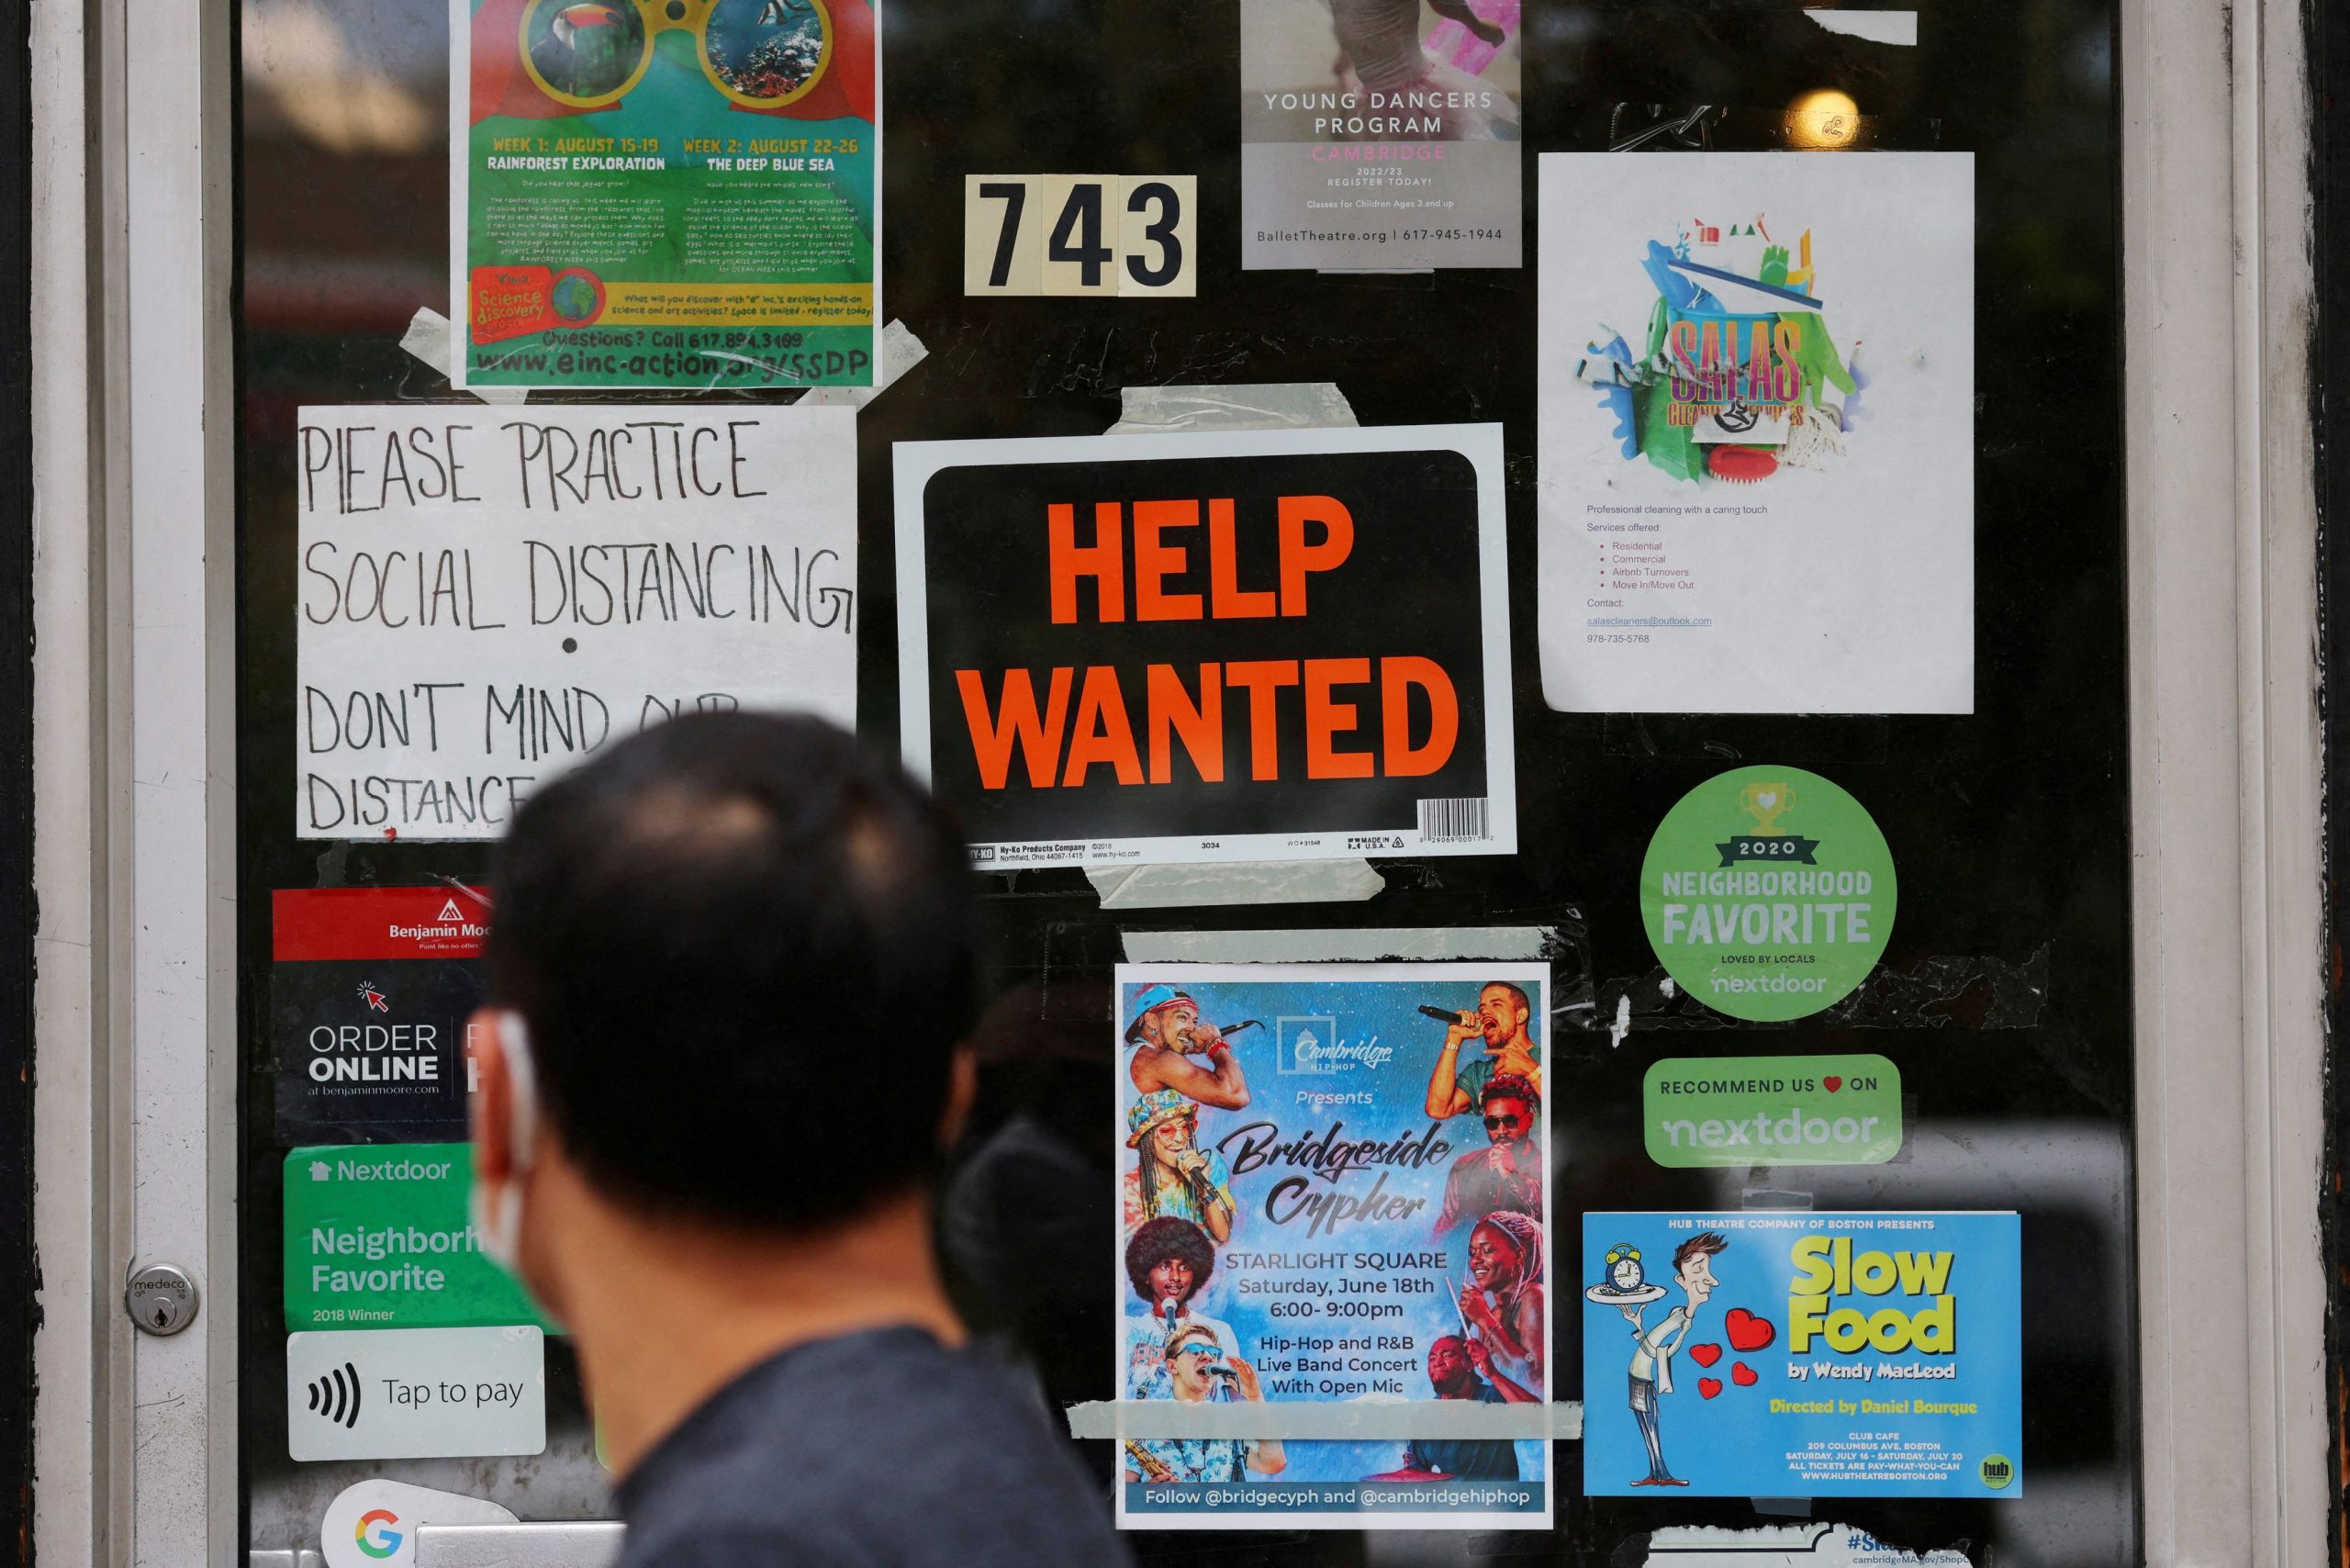 ΗΠΑ: Μειώθηκαν οι αιτήσεις για επιδόματα ανεργίας